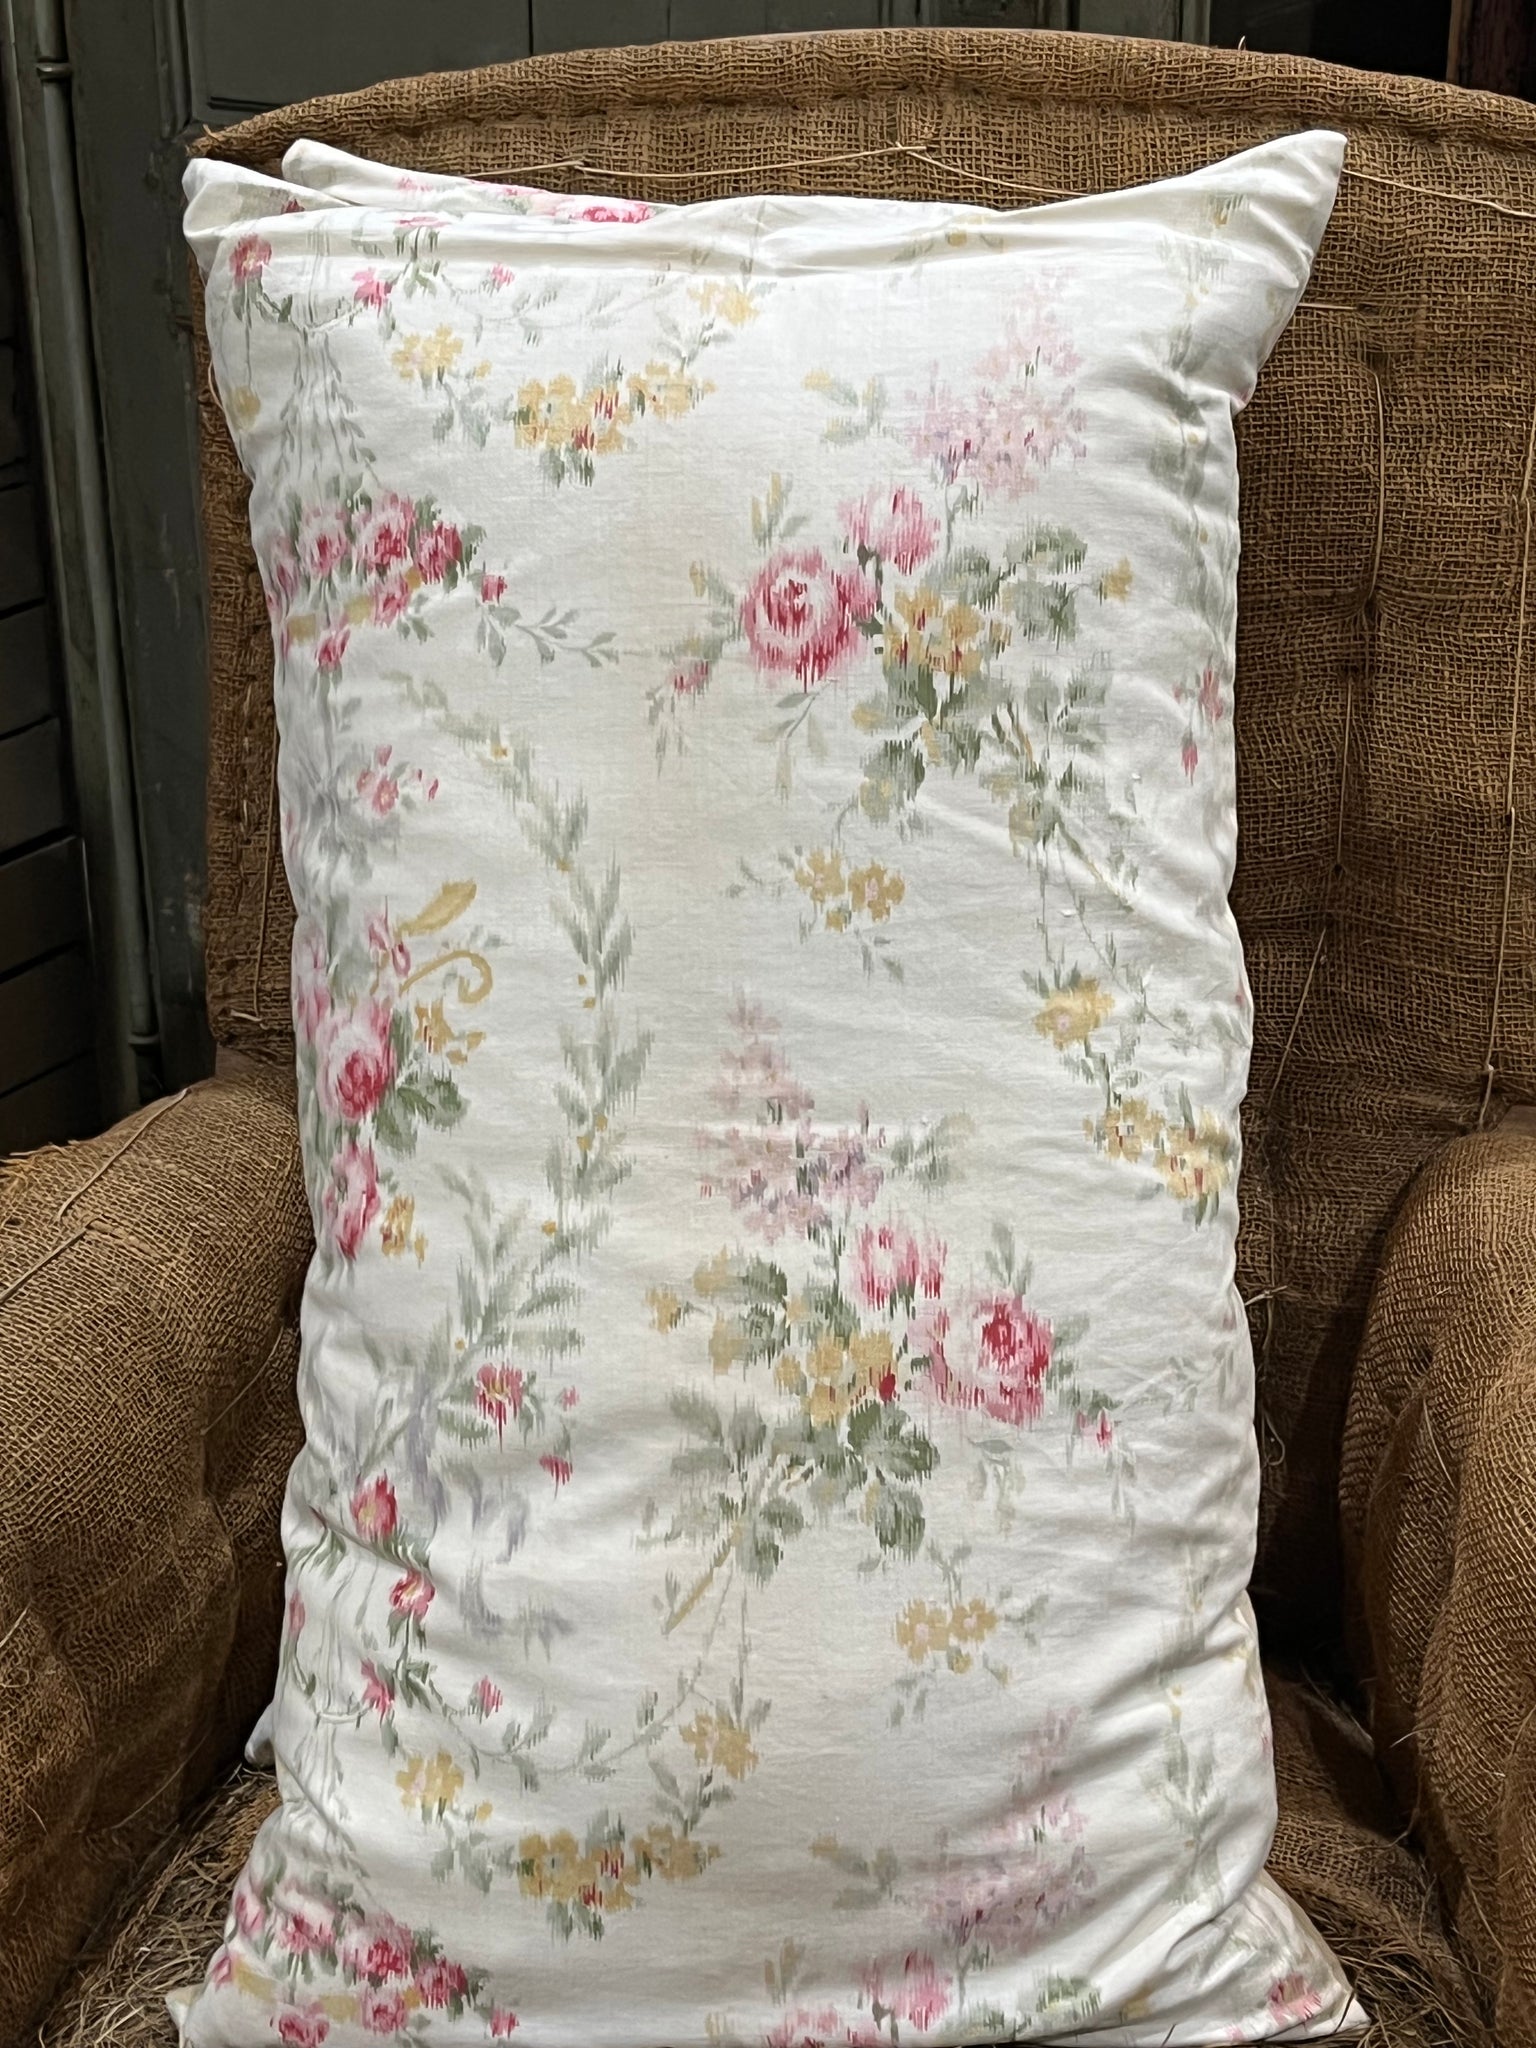 Floral antique cushion